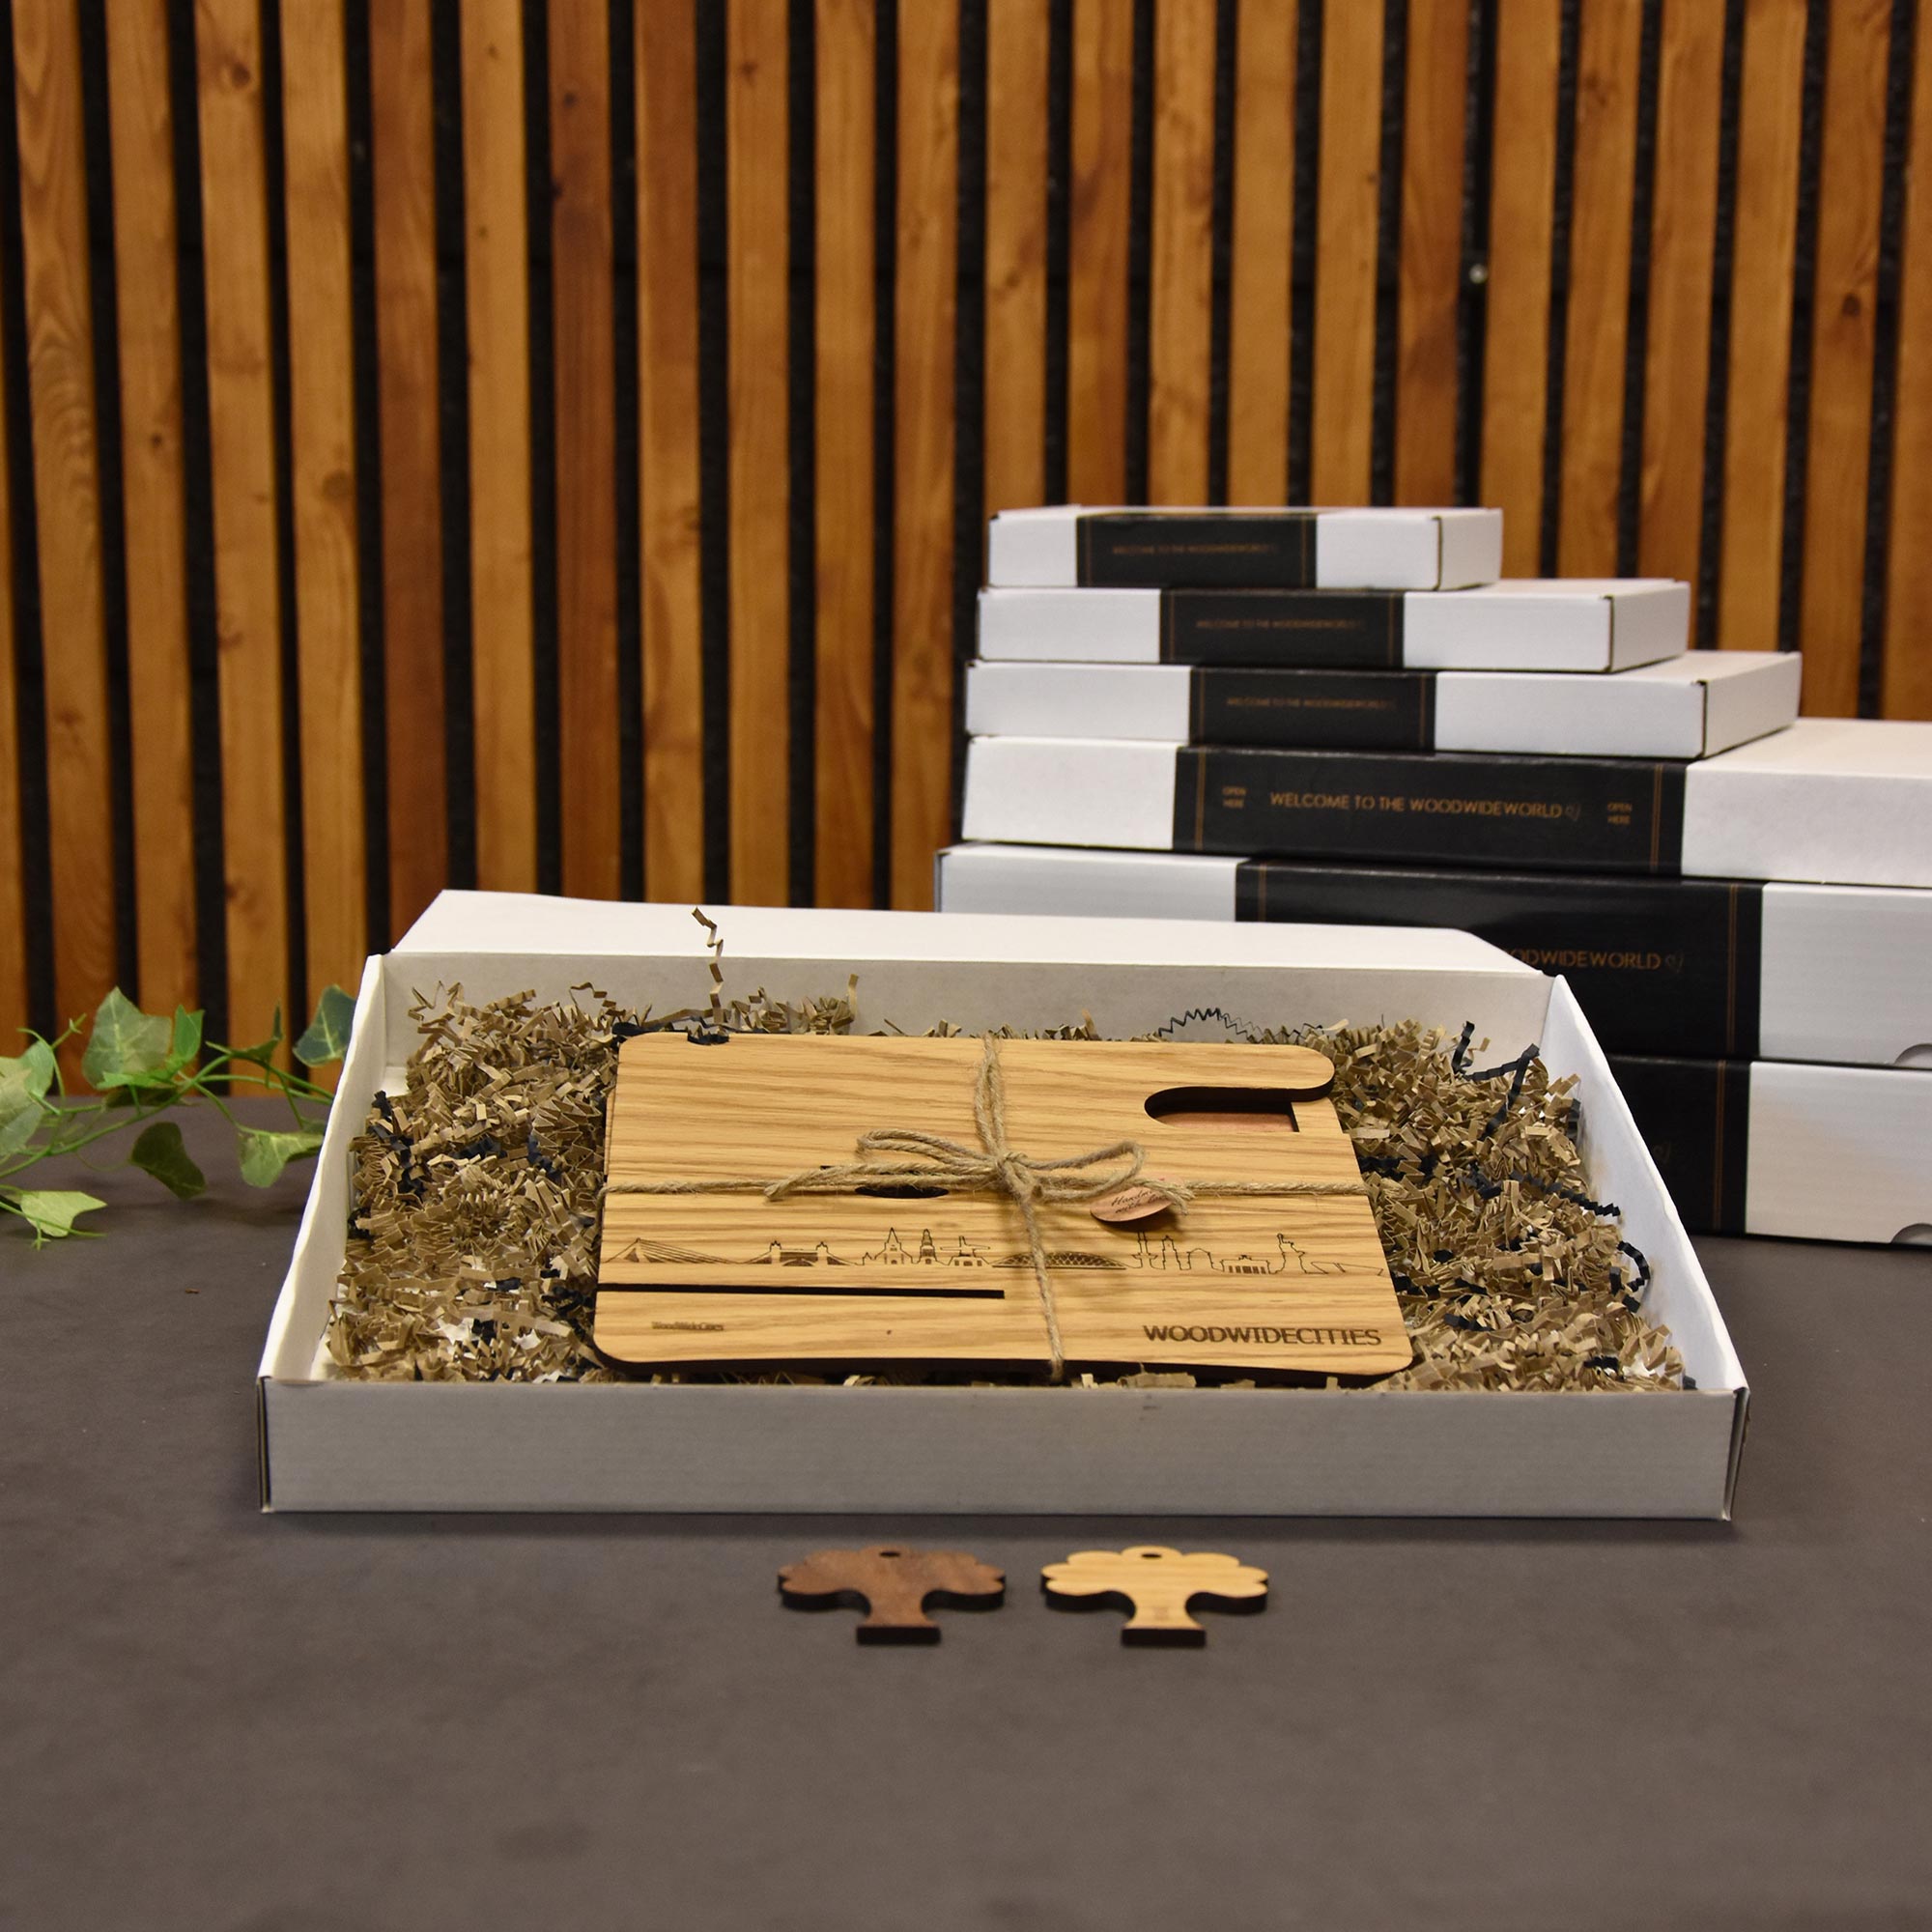 Skyline Desk Organizer Doesburg houten cadeau decoratie relatiegeschenk van WoodWideCities